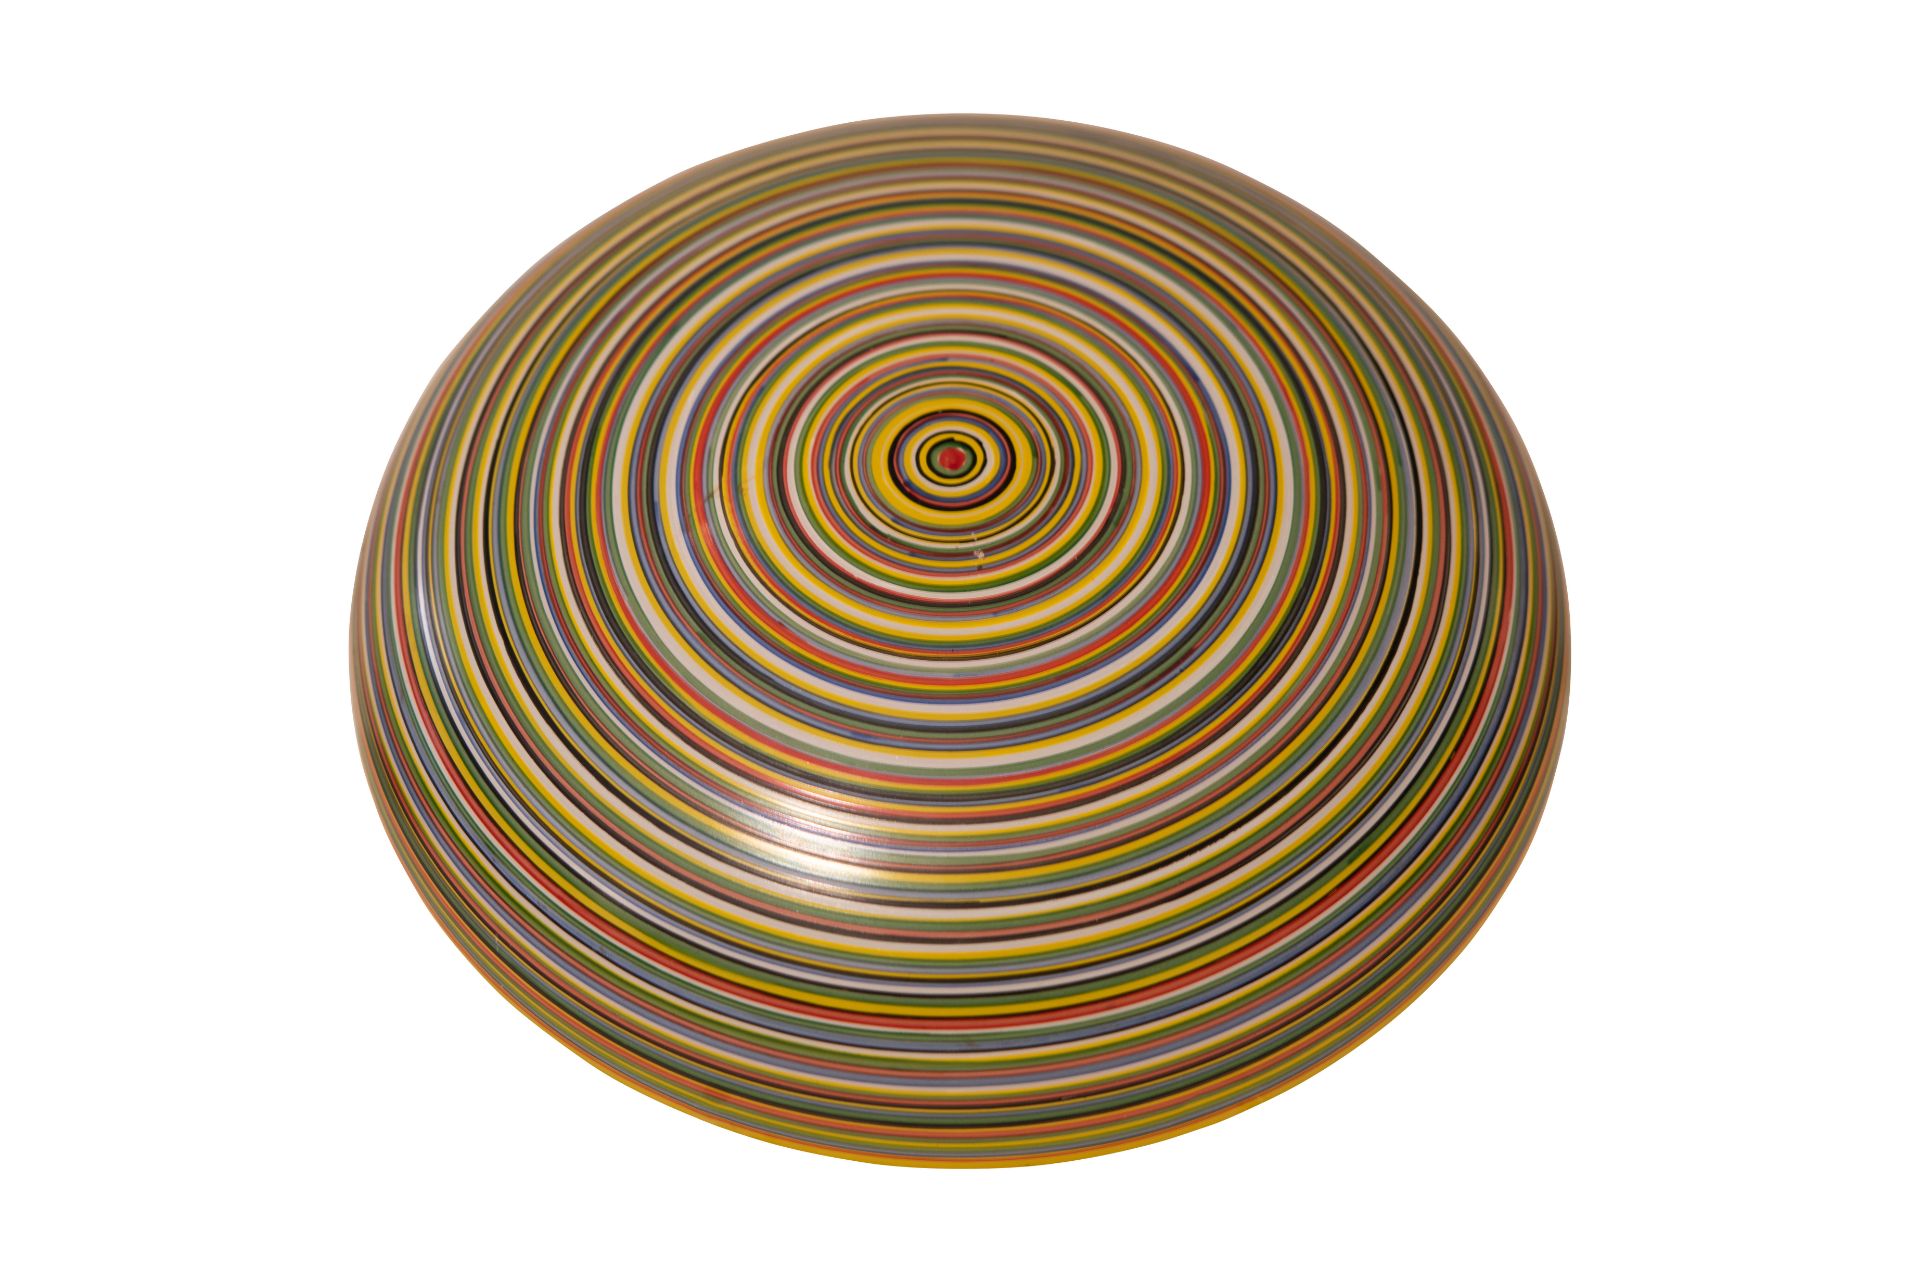 Glas Schale bunt bemalt | Glass Bowl Painted with Colorful Circles - Bild 3 aus 5